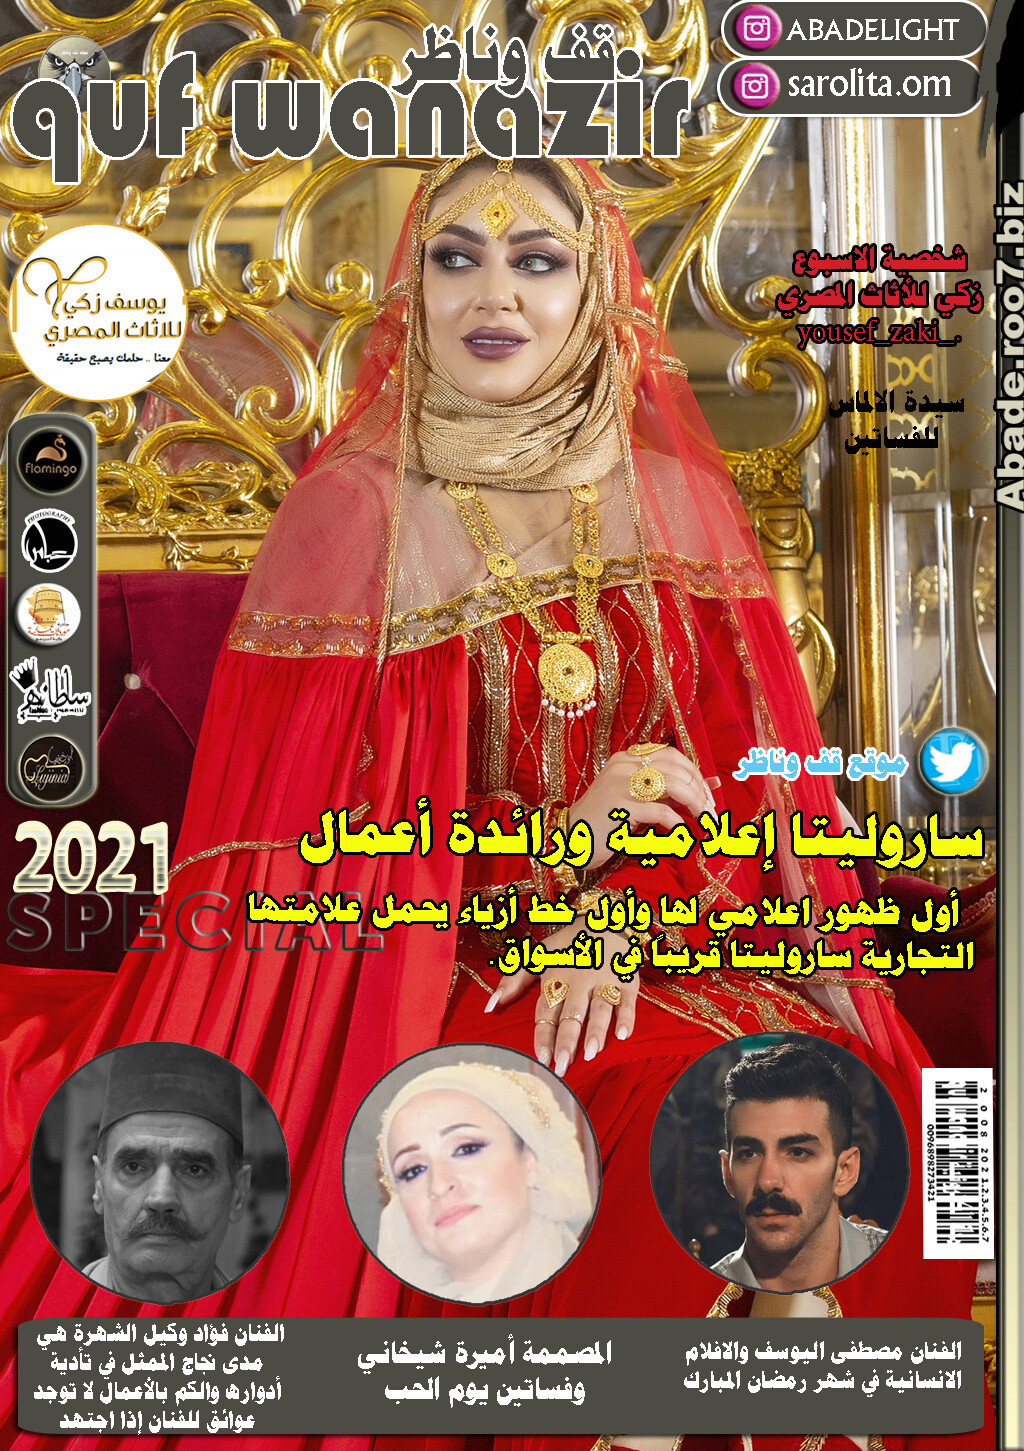 الامارات - مجلة قف وناظر 2021 نجمة الغلاف ساروليتا Aa043